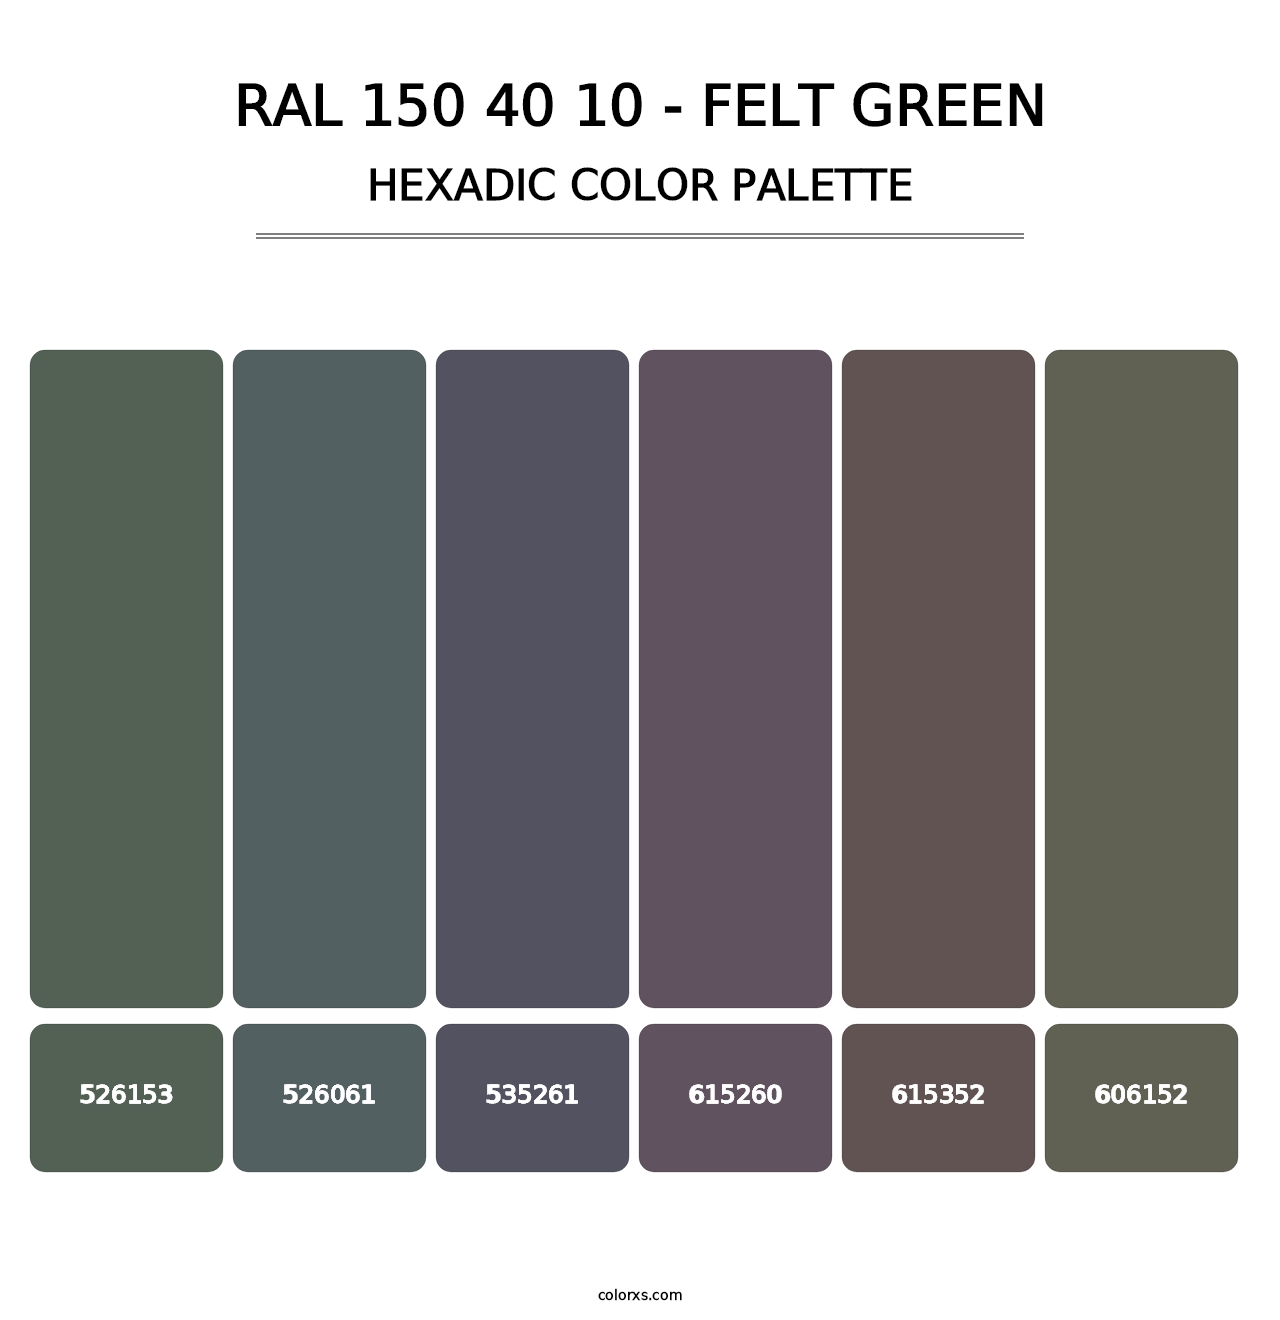 RAL 150 40 10 - Felt Green - Hexadic Color Palette